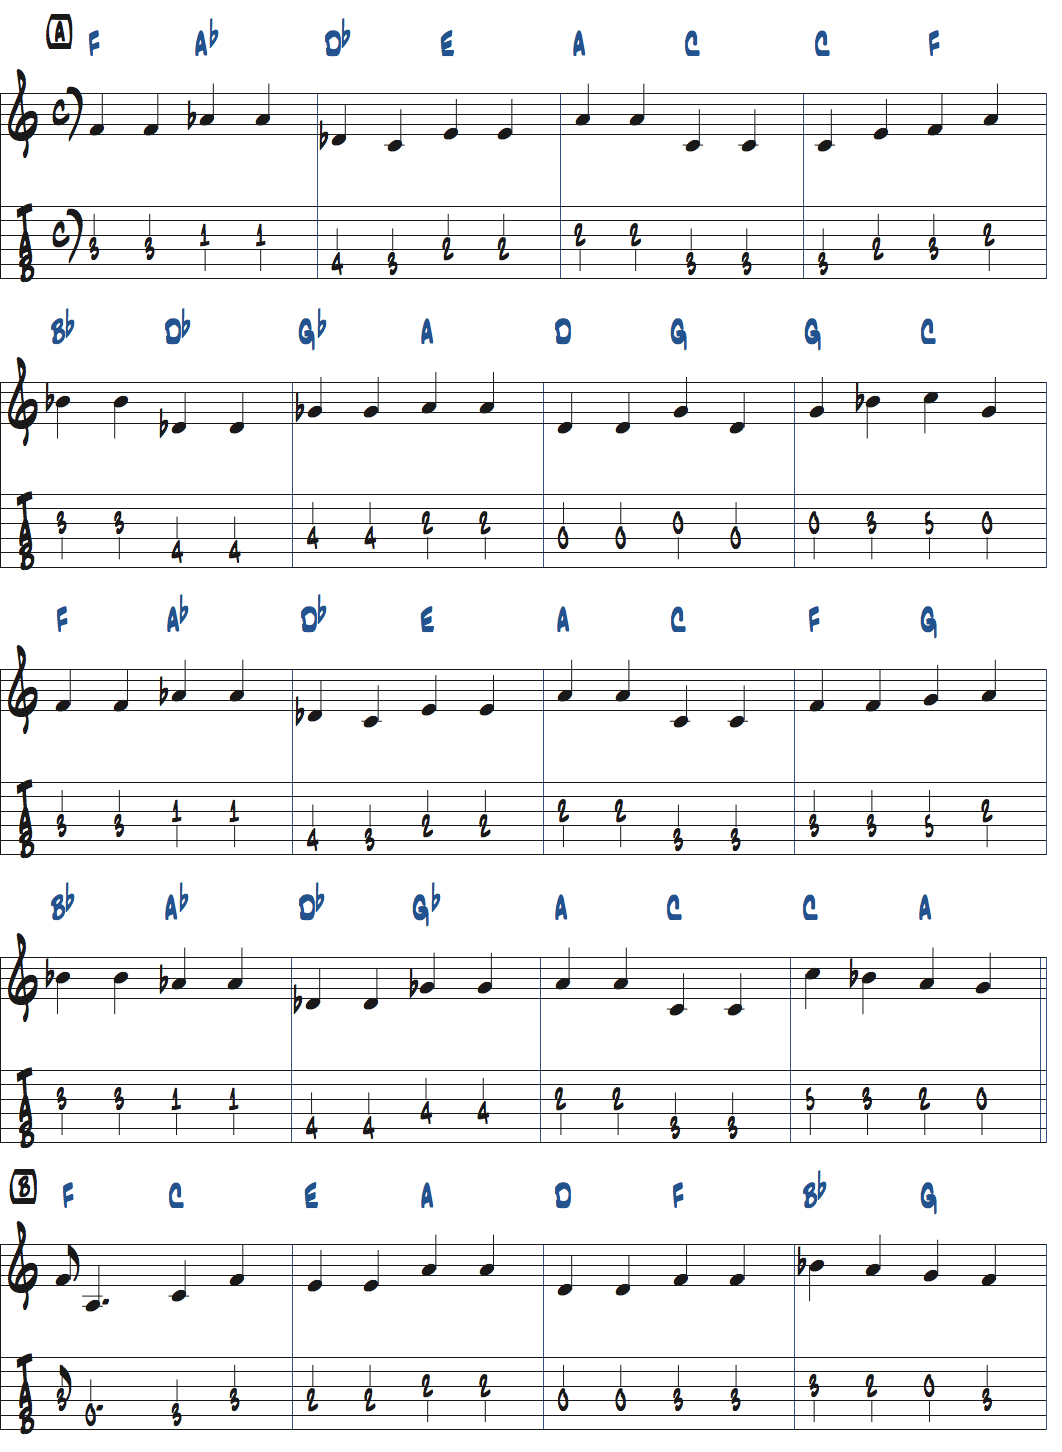 ジョン・コルトレーン作曲26-2のベースライン最初のテーマページ1楽譜